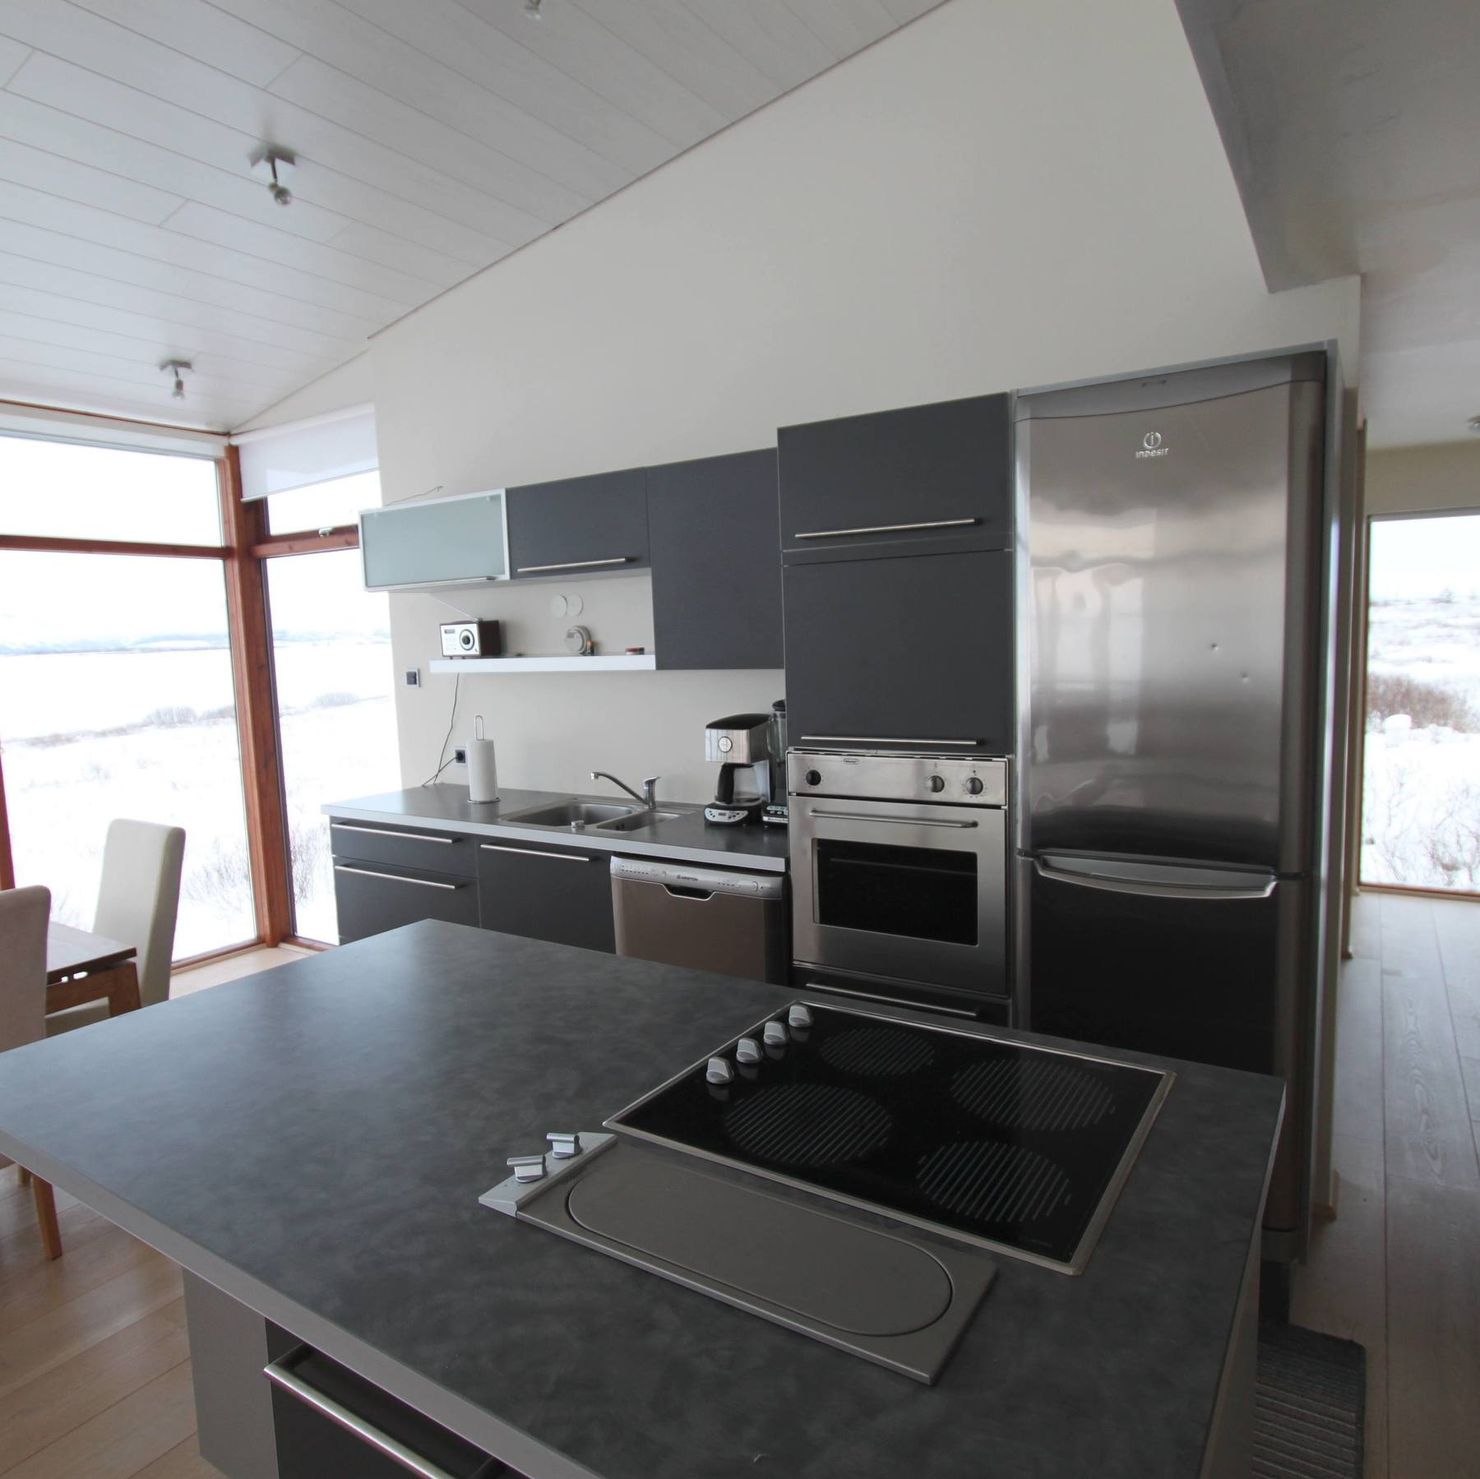 Stylishe, offene Küche mit großem Küchenblick und Panoramafenstern